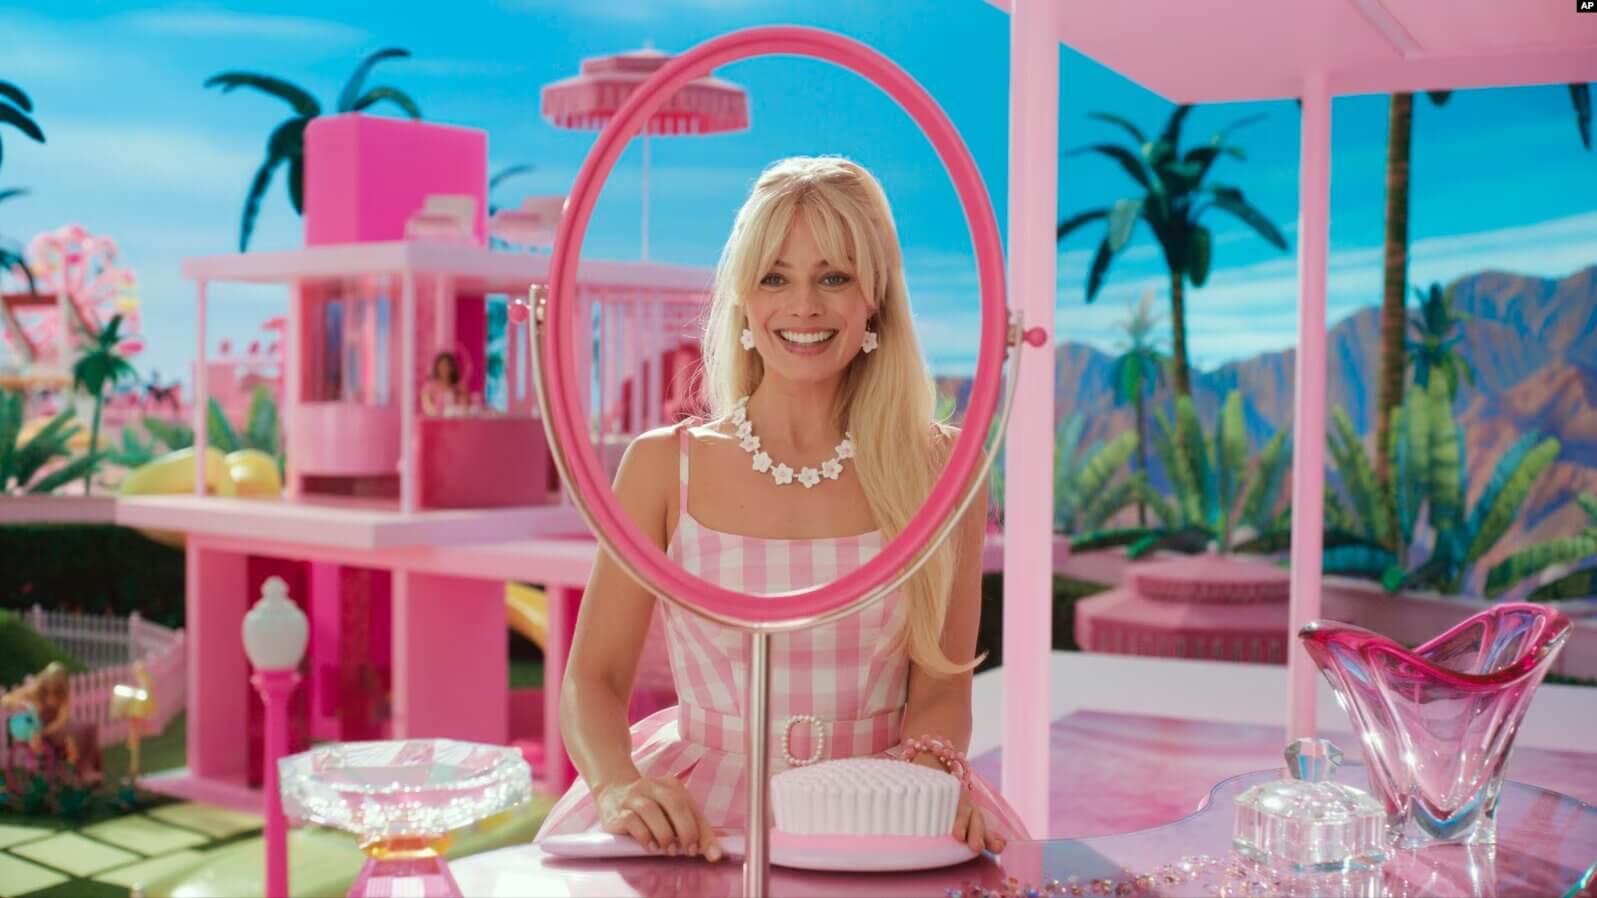 Esta imagen proporcionada por Warner Bros. Pictures muestra a Margot Robbie en una escena de "Barbie". (Fotos de Warner Bros. vía AP)